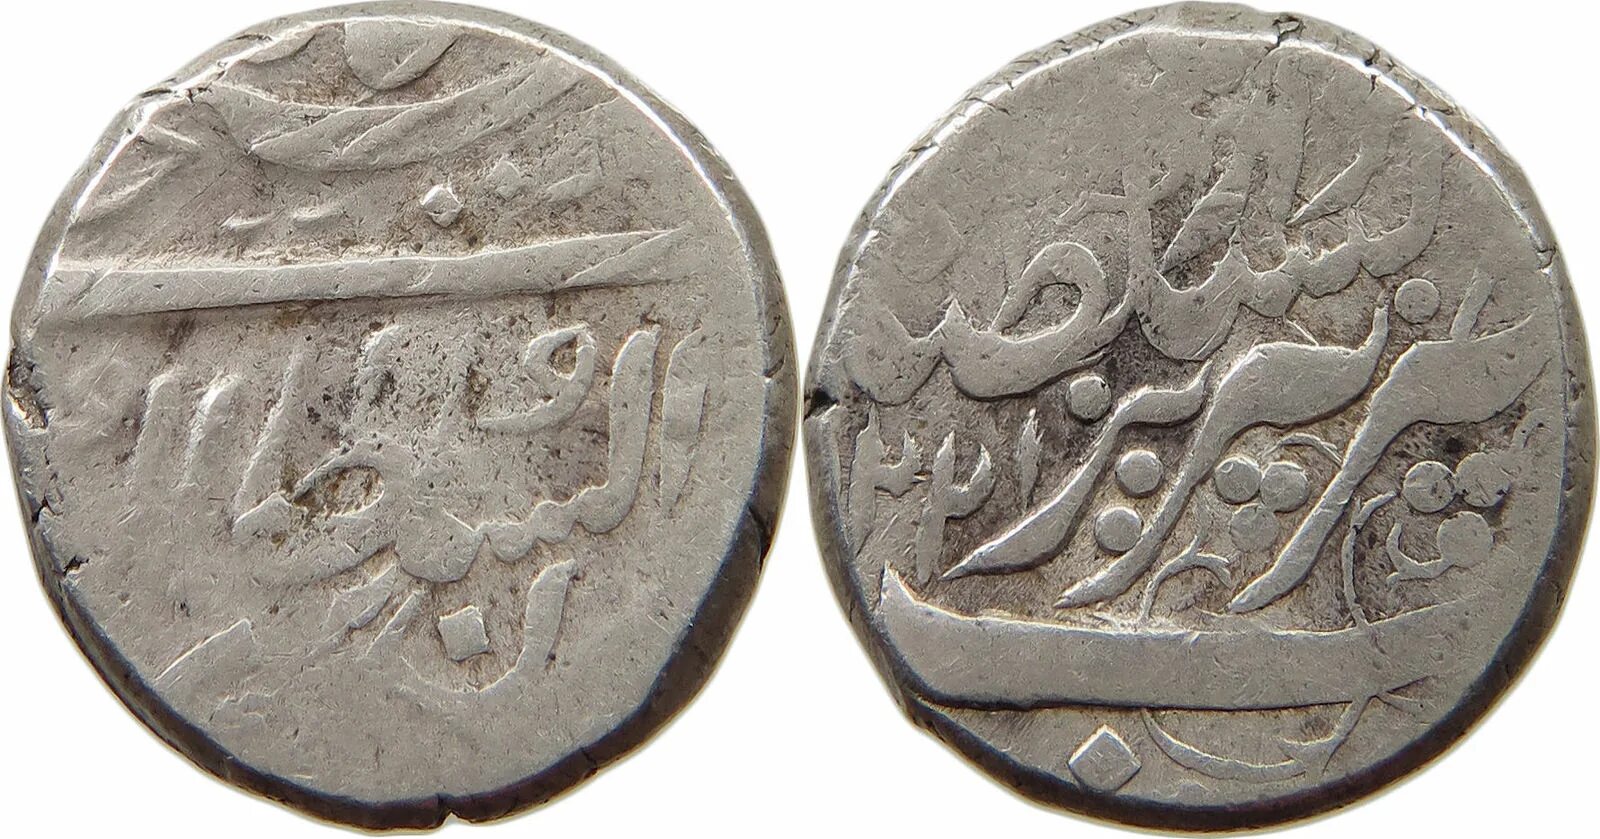 Иранская монета 5 букв. Монеты Персии 17 век. Монеты Аббаса 1. Монеты Melik-Shah. Монети серебо Хусеин 1 Шах Персии 1694 -1722.